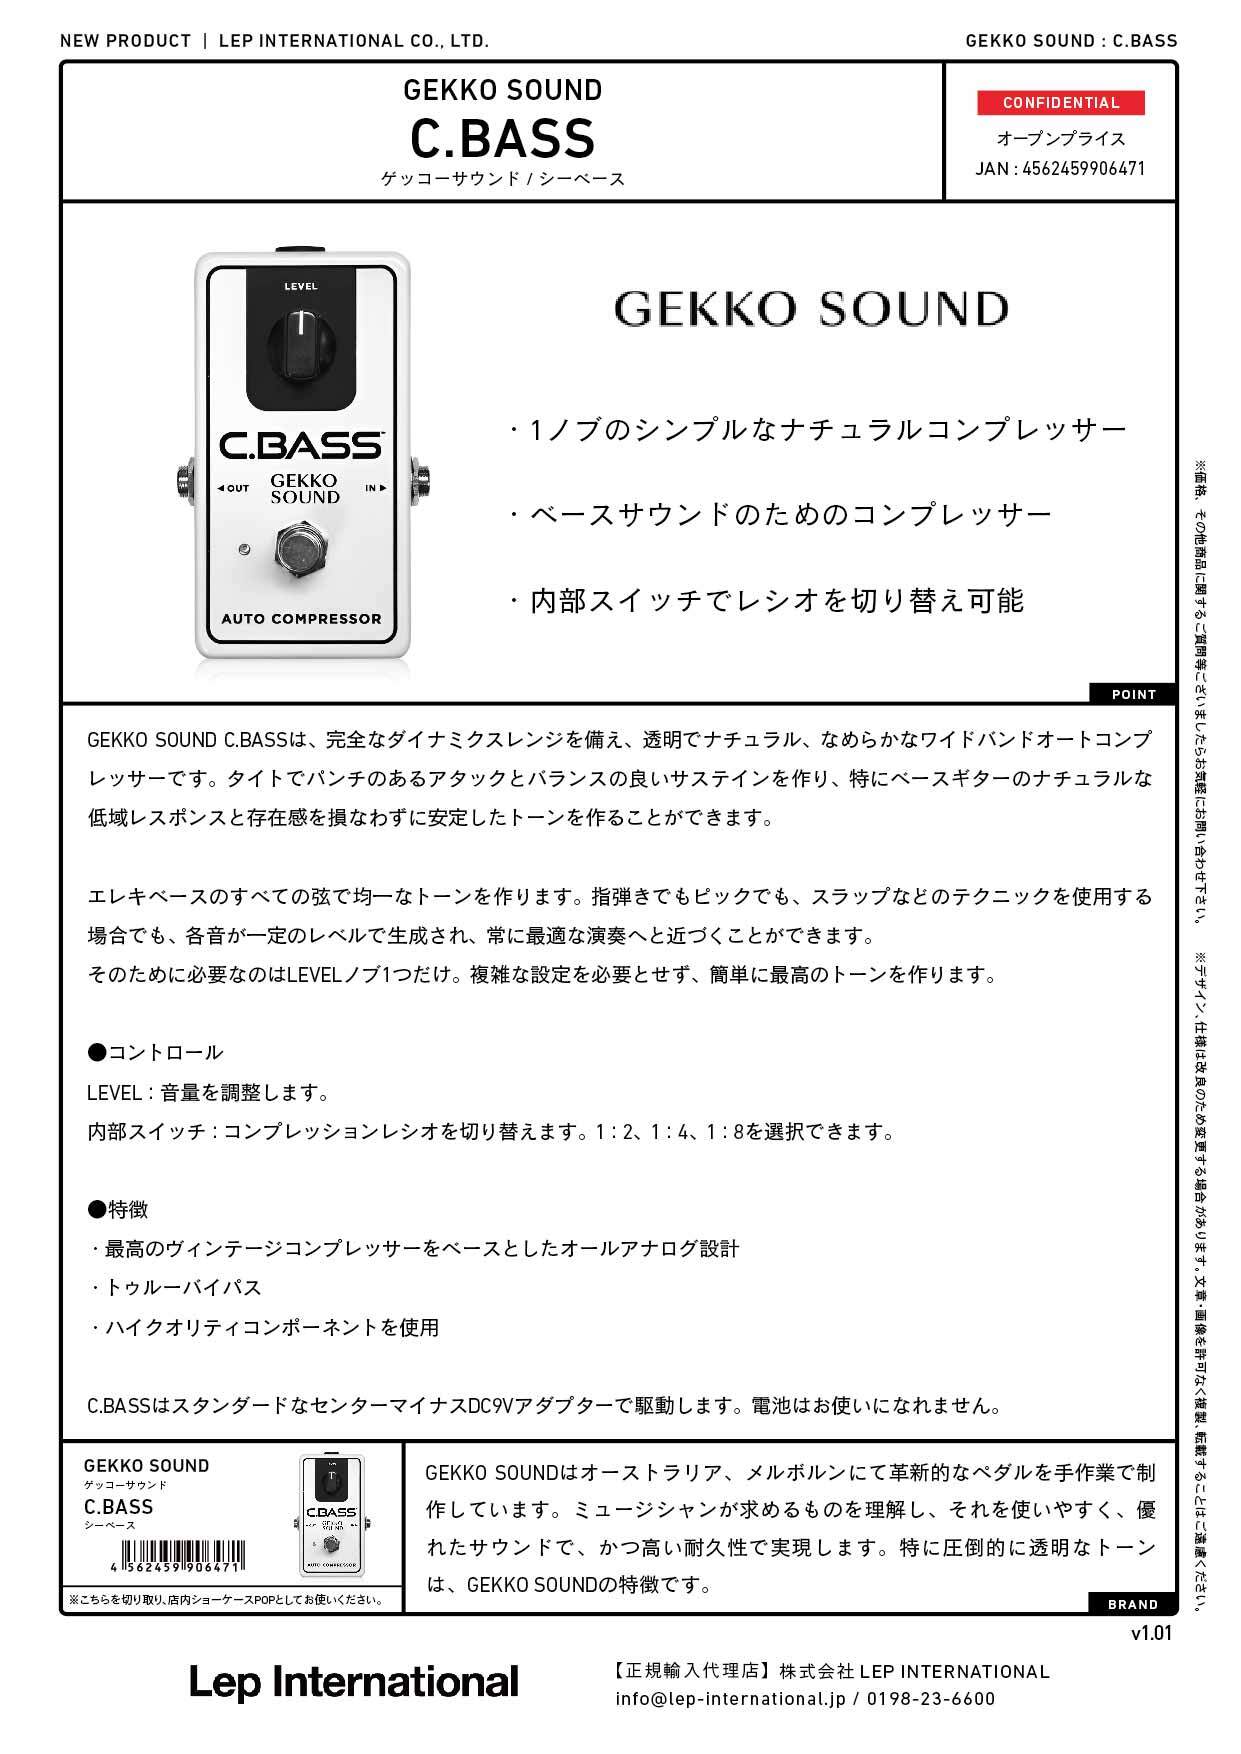 GEKKO SOUND / C.BASS